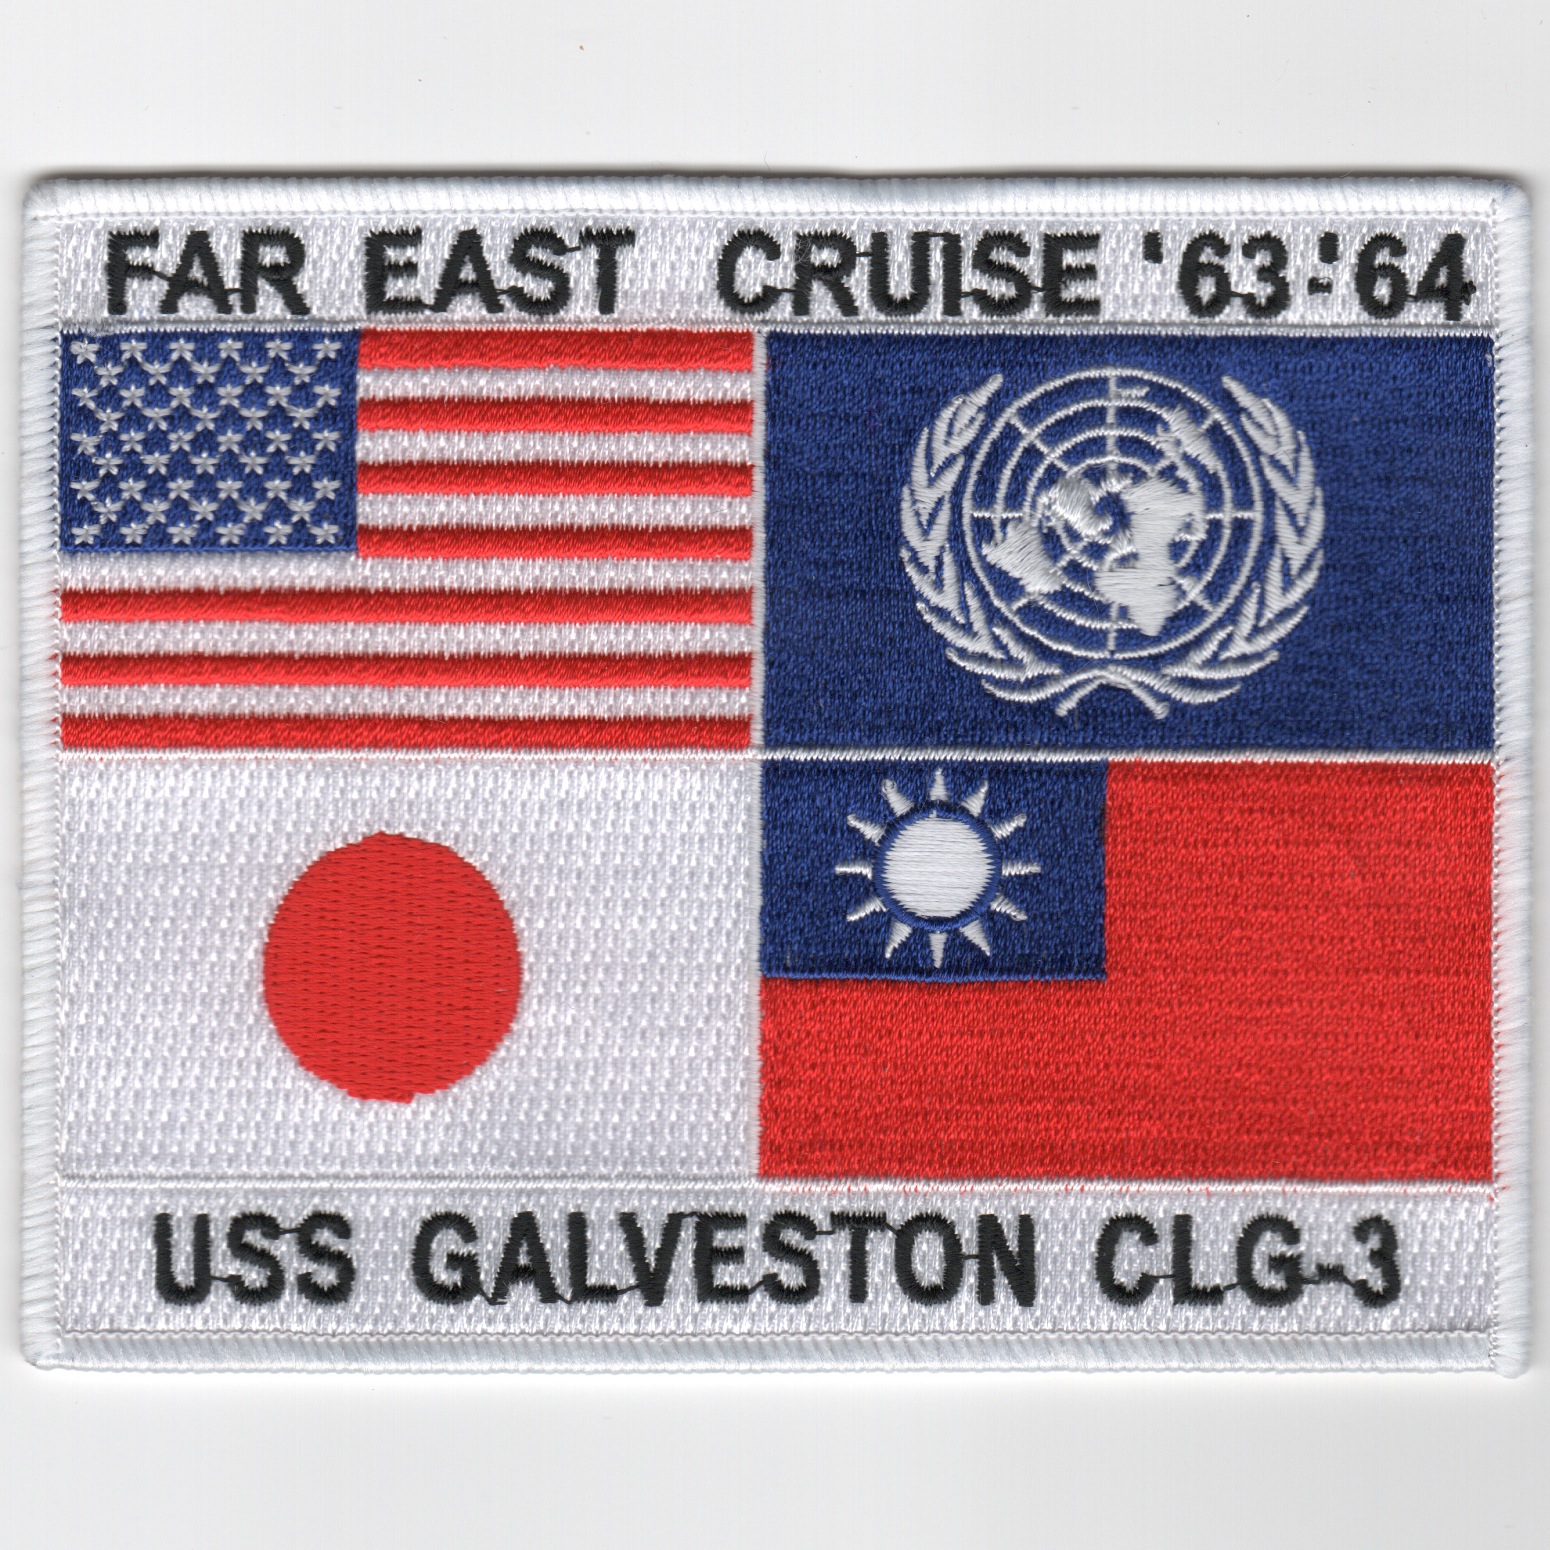 TOPGUN: CLG-3/1963 Far East Cruise